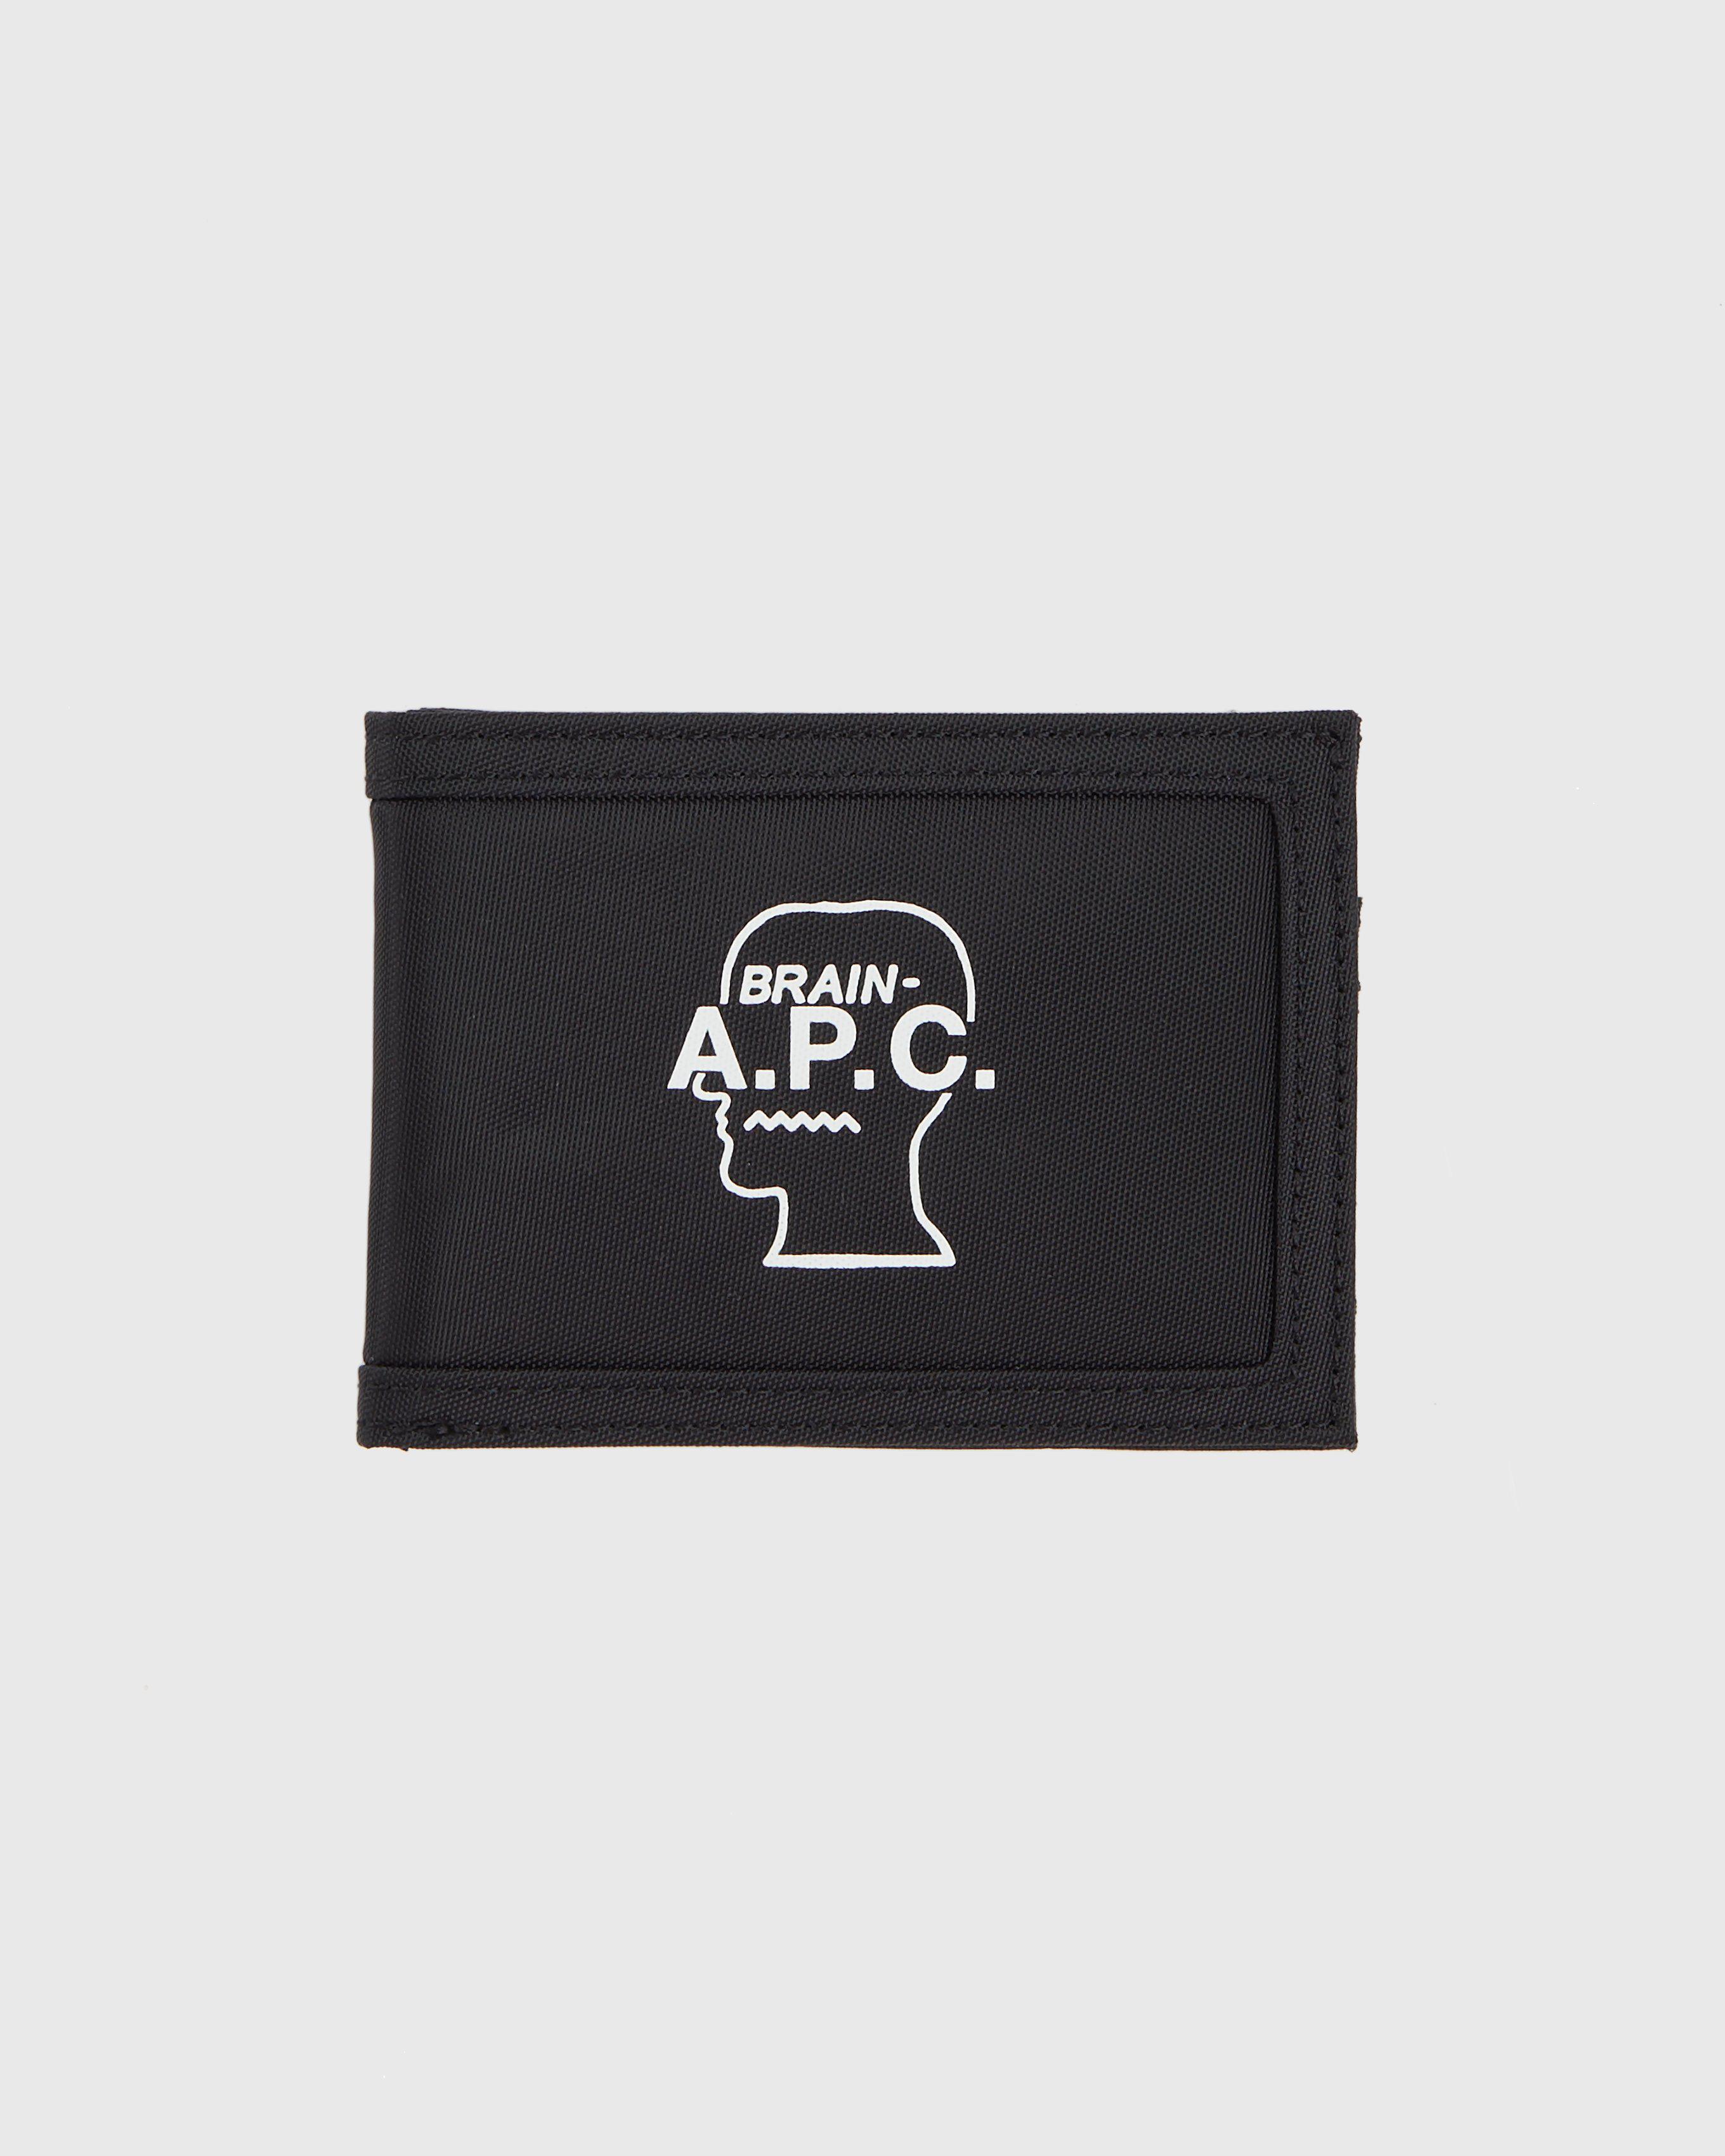 A.P.C. x Brain Dead – Black Porte-Cartes by A.P.C. X BRAIN DEAD